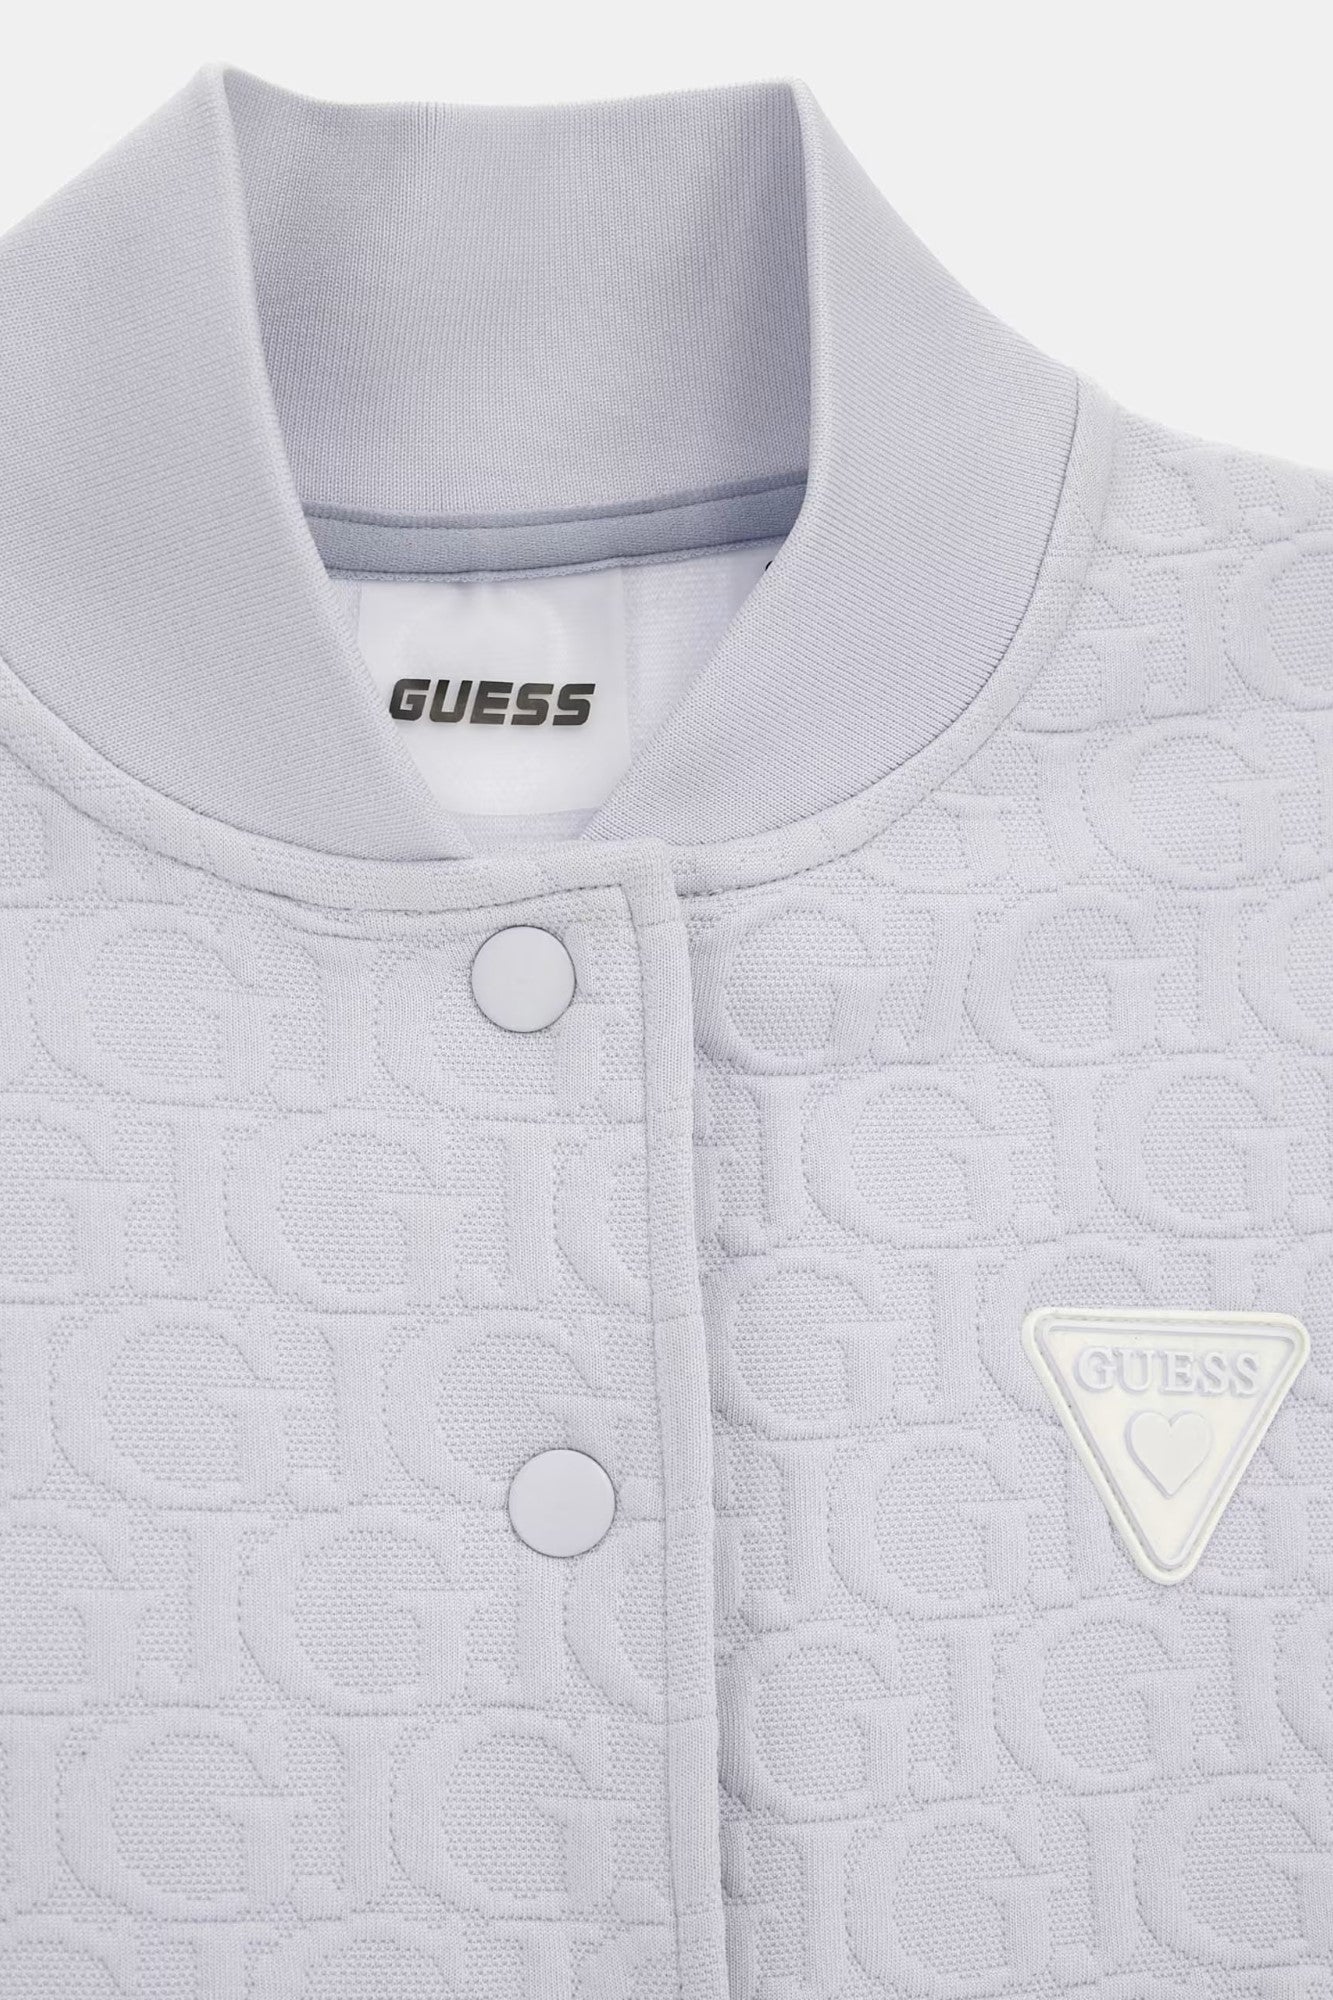 Bluza GUESS Cu Logo Imprimat IMBRACAMINTE GUESS   